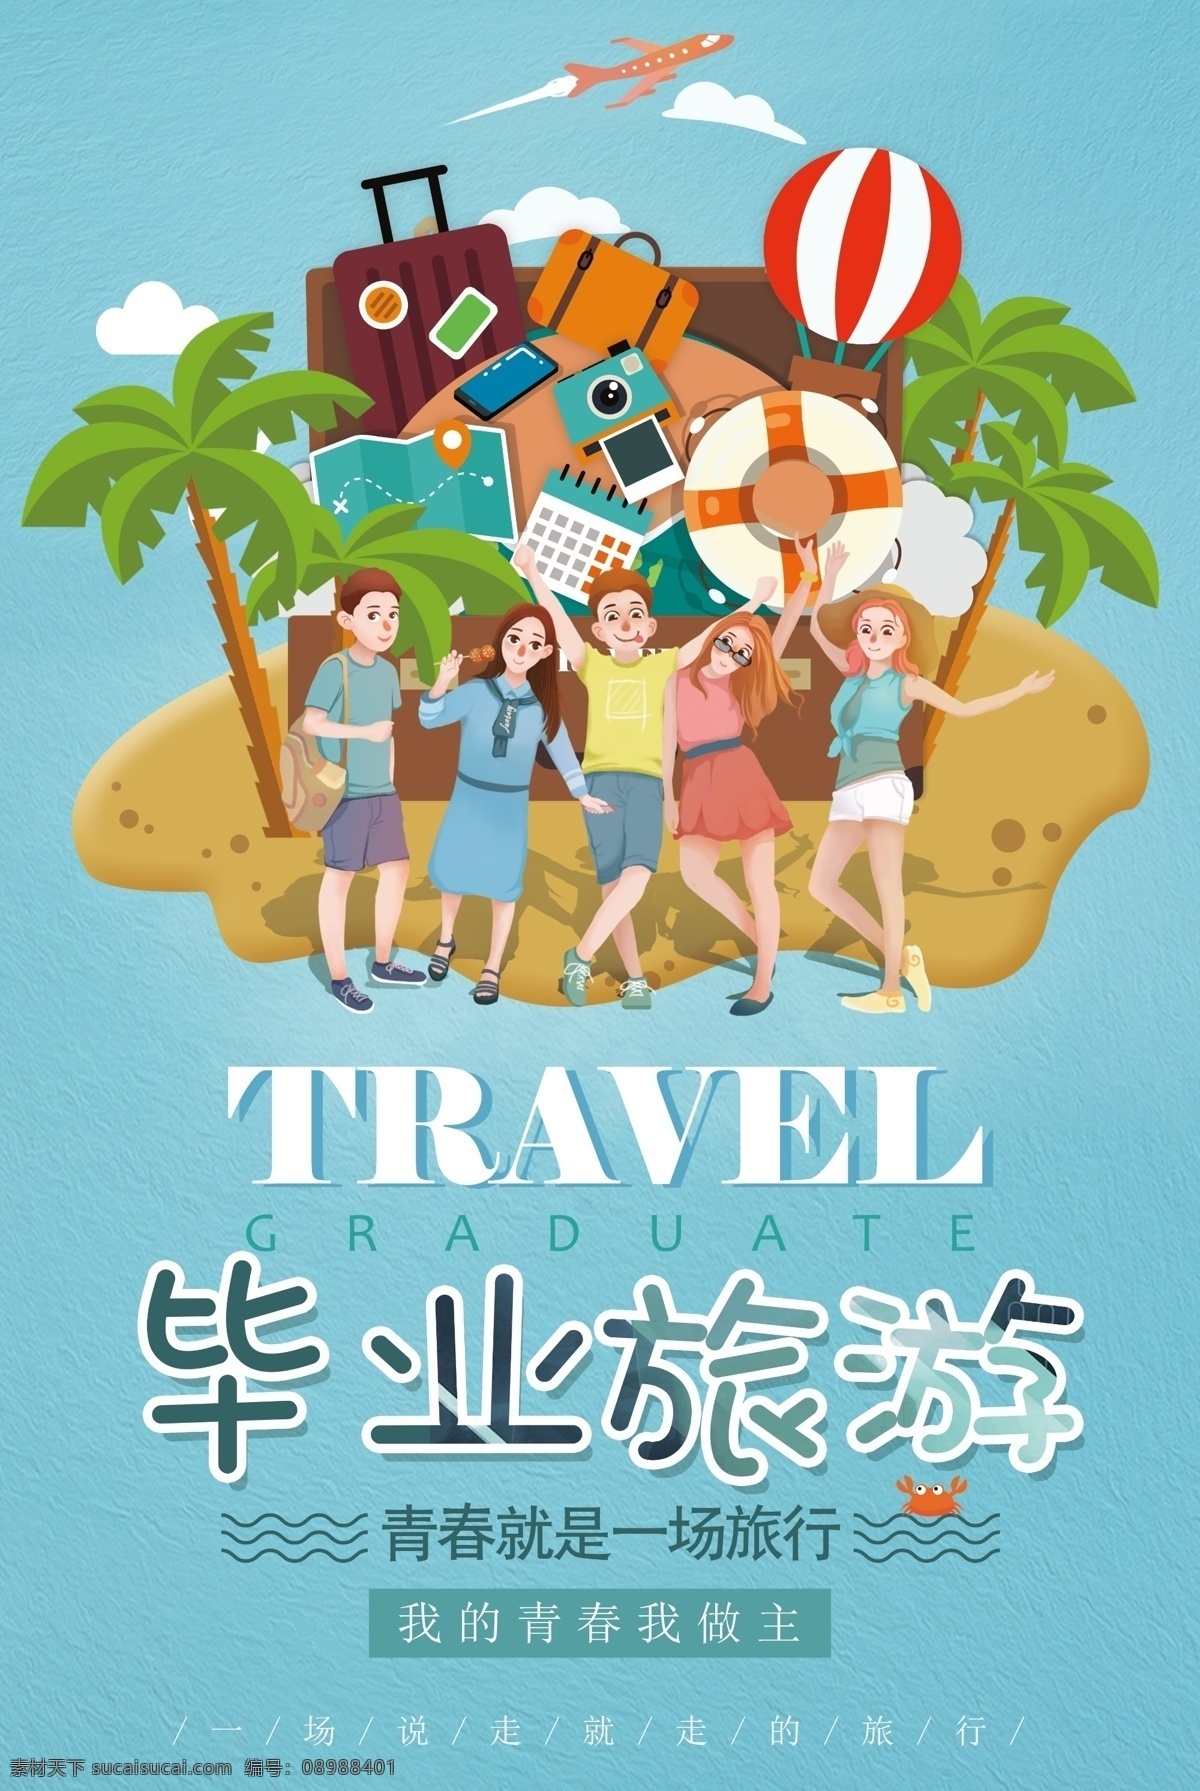 毕业旅游海报 毕业 旅游 青春 旅行 毕业旅游 青春之旅 旅游海报 海报 走